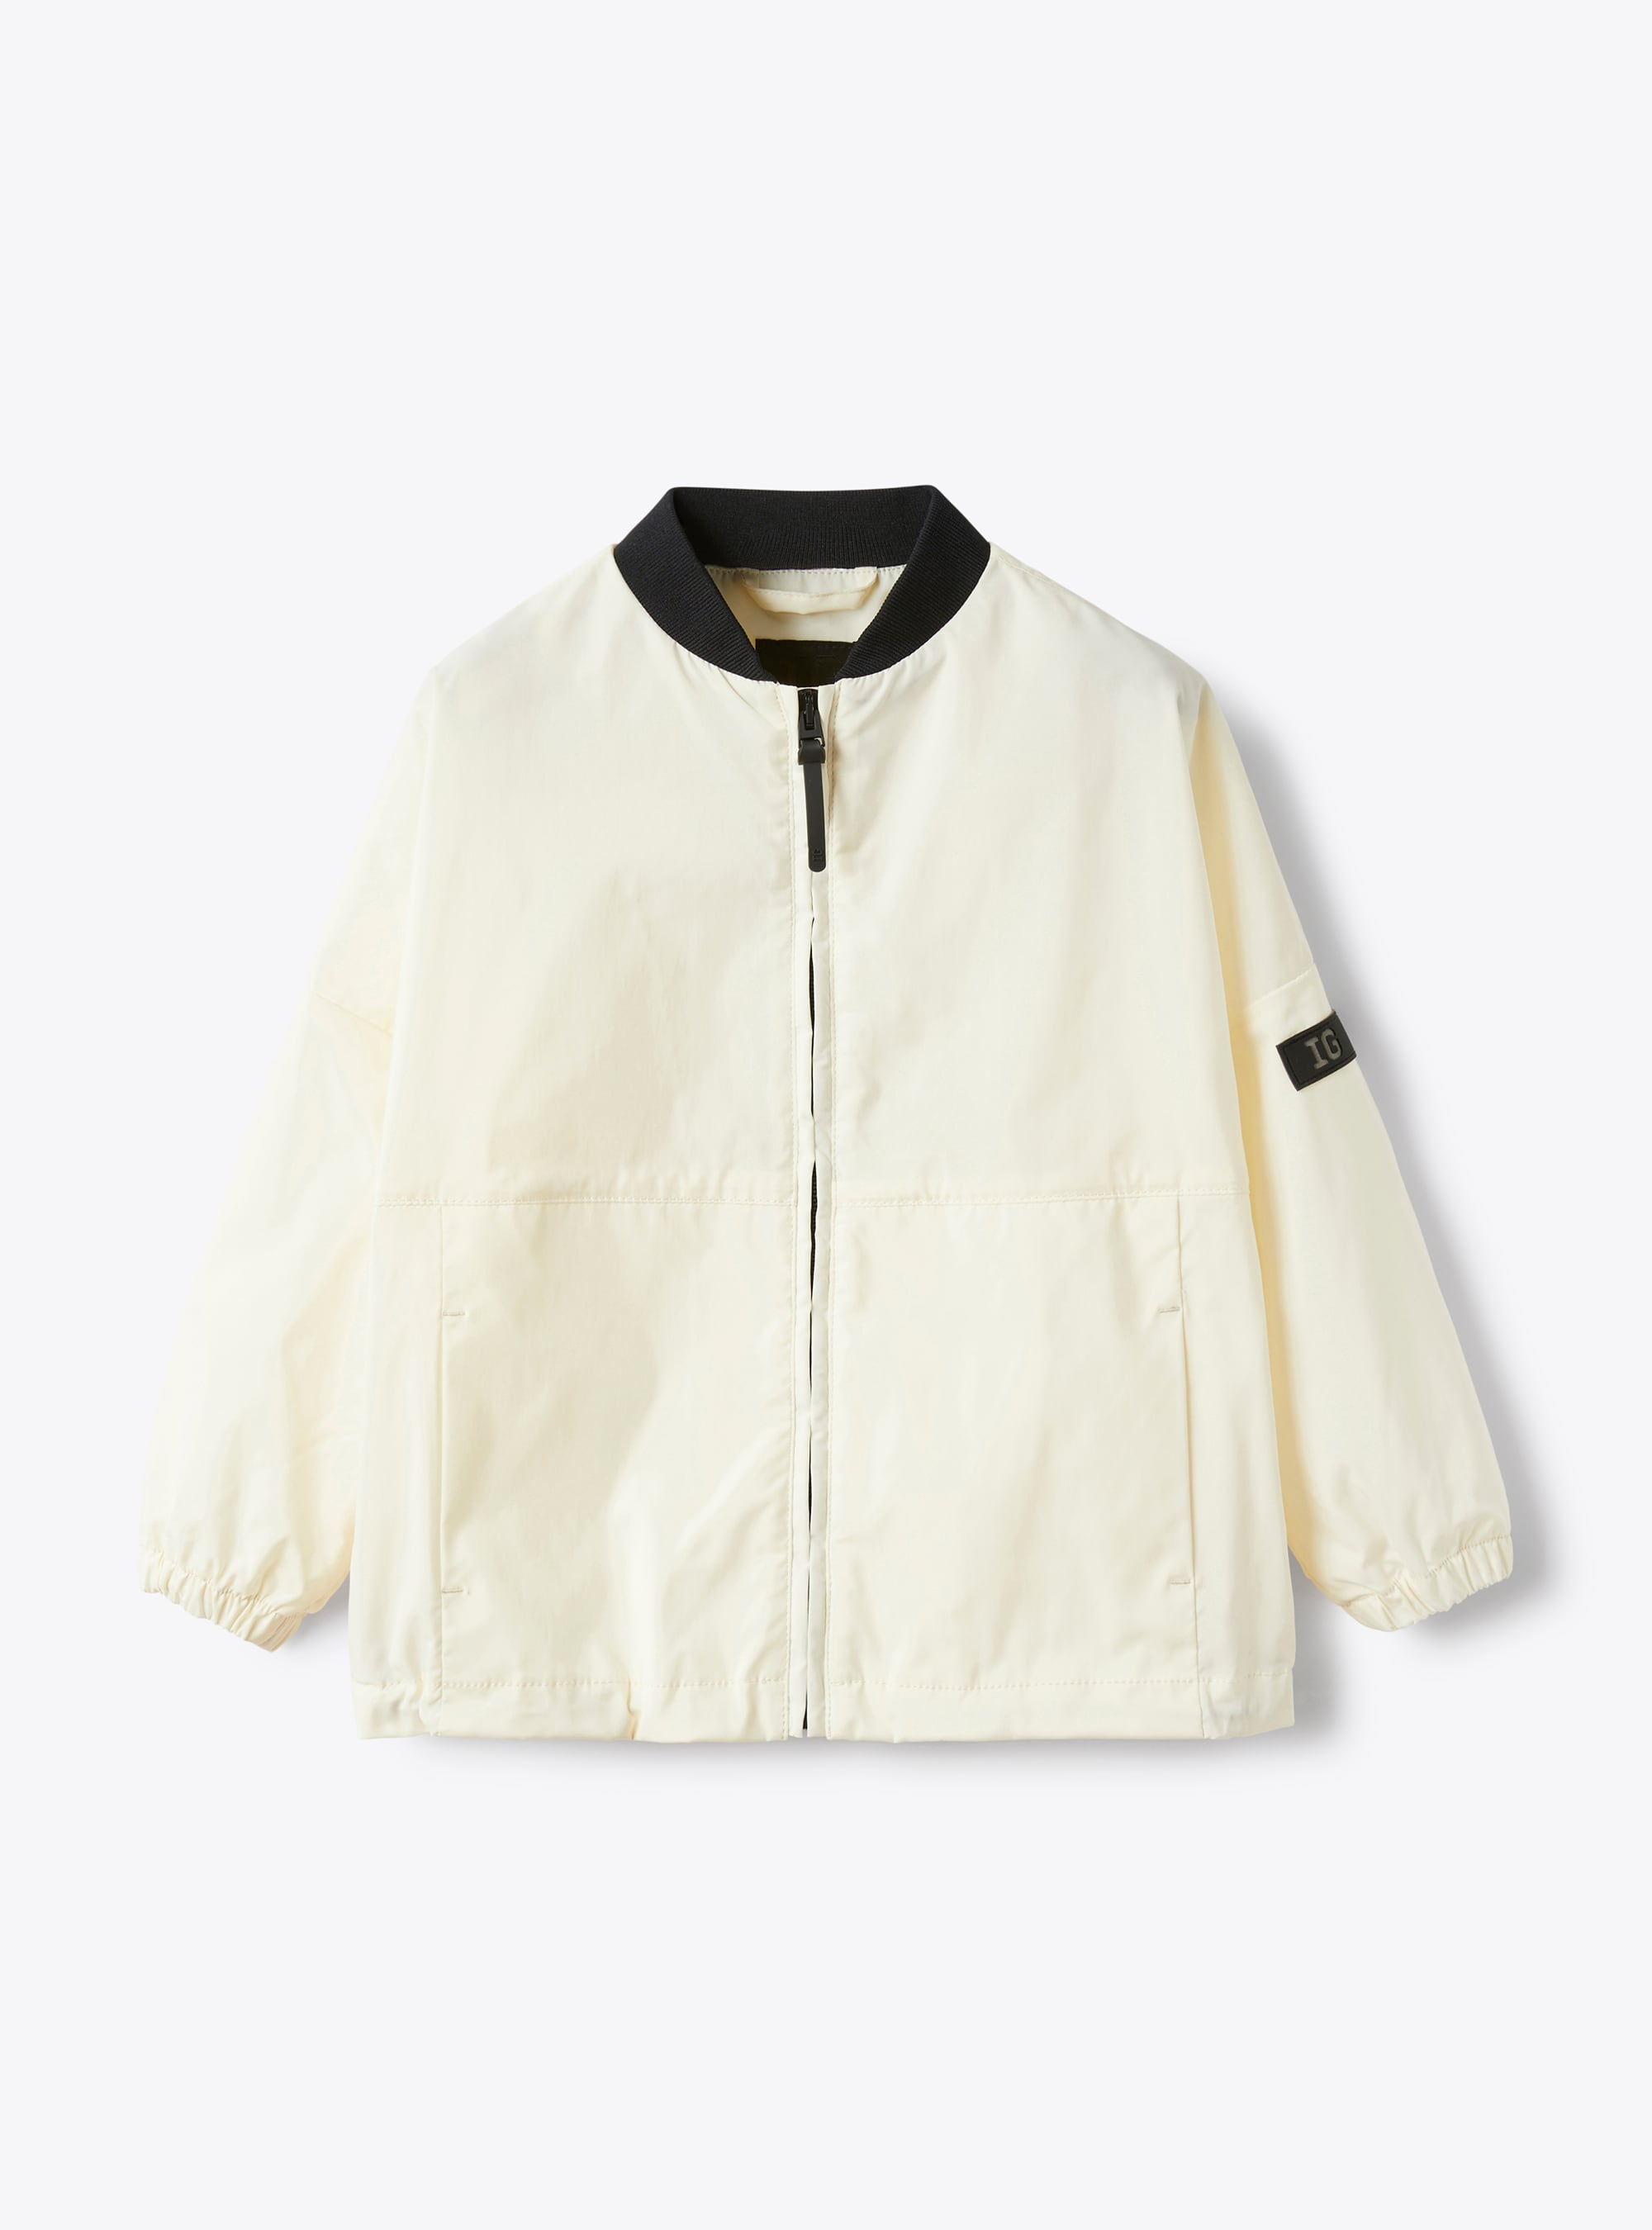 Jacke aus weißem Funktionsnylon - Jacken - Il Gufo